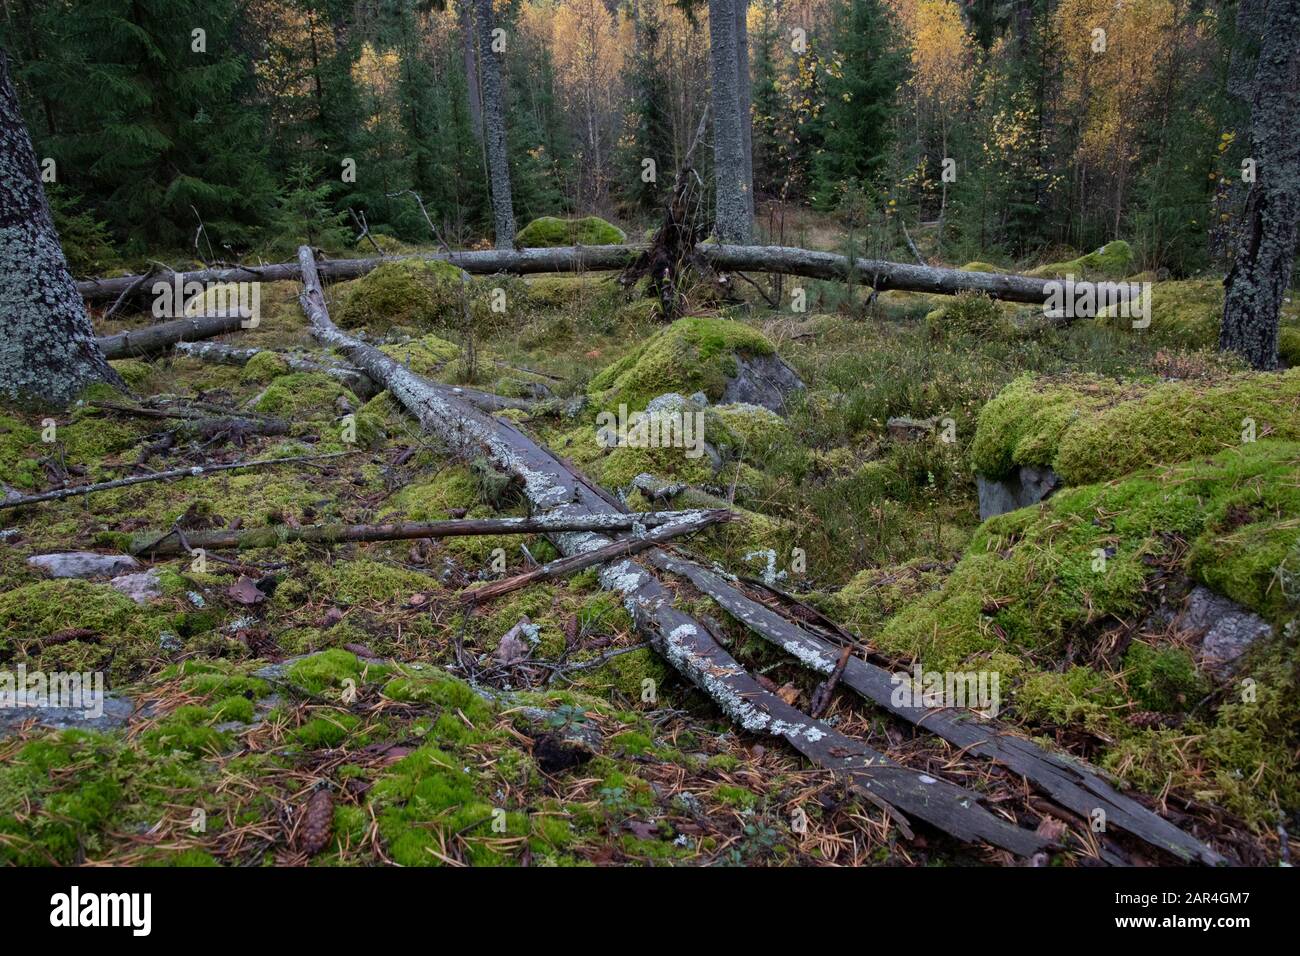 Fichtenwald mit einer schimmeligen Liegerichtfichte im Vordergrund Stockfoto